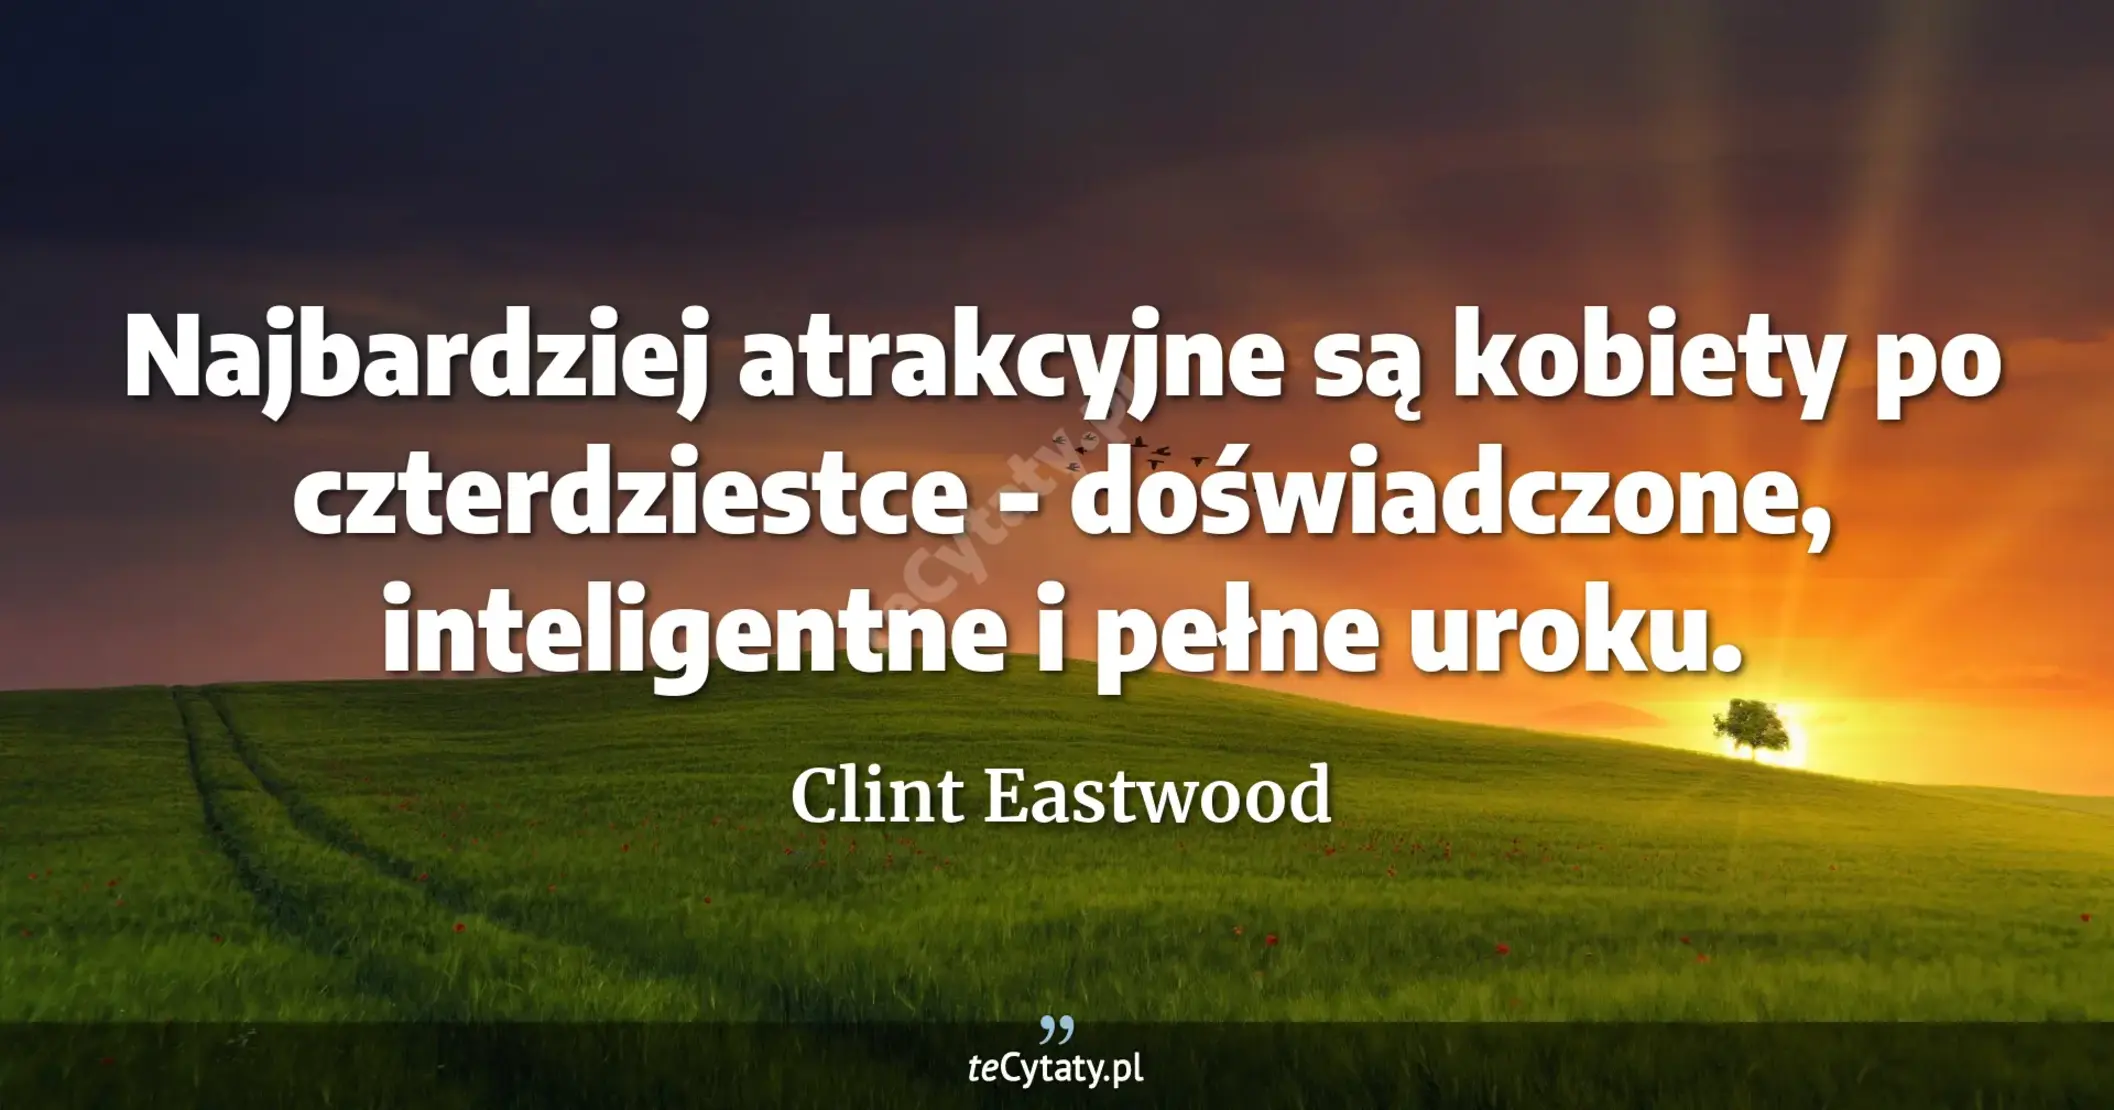 Najbardziej atrakcyjne są kobiety po czterdziestce - doświadczone, inteligentne i pełne uroku. - Clint Eastwood